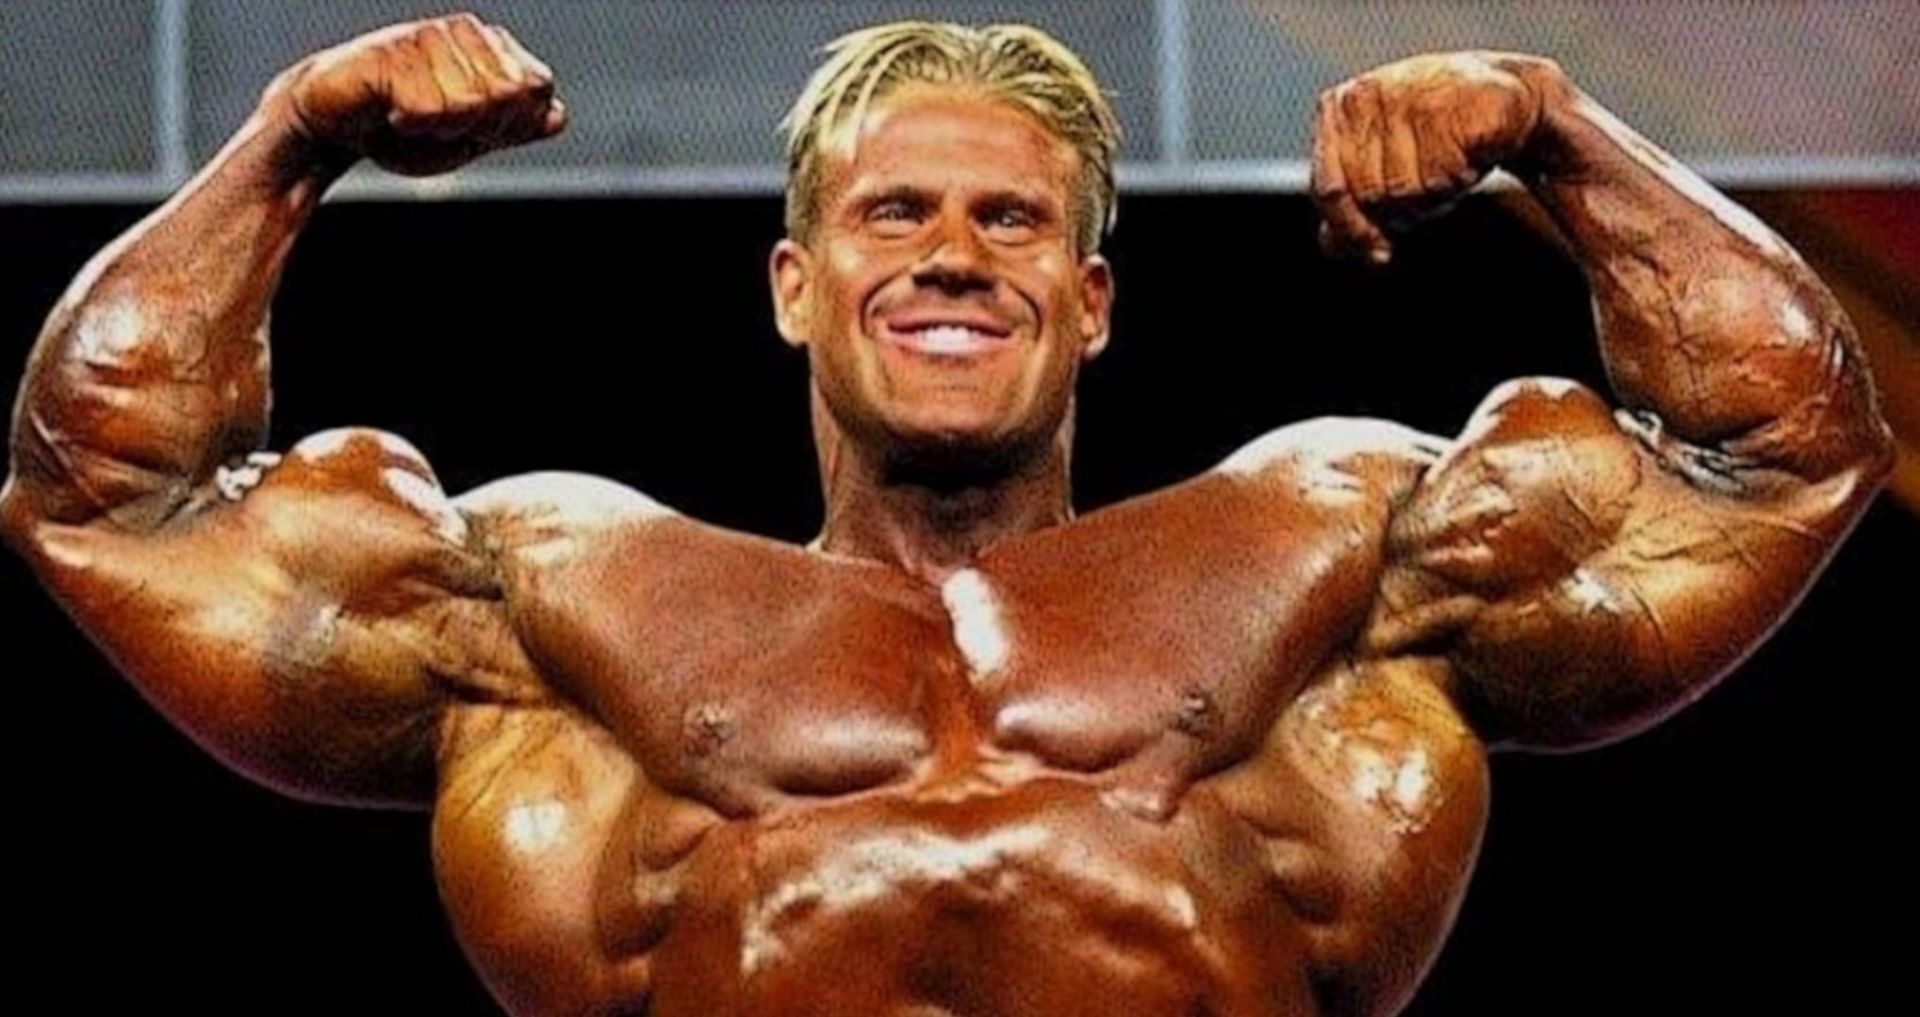 What is bodybuilder Jay Cutler's net worth?